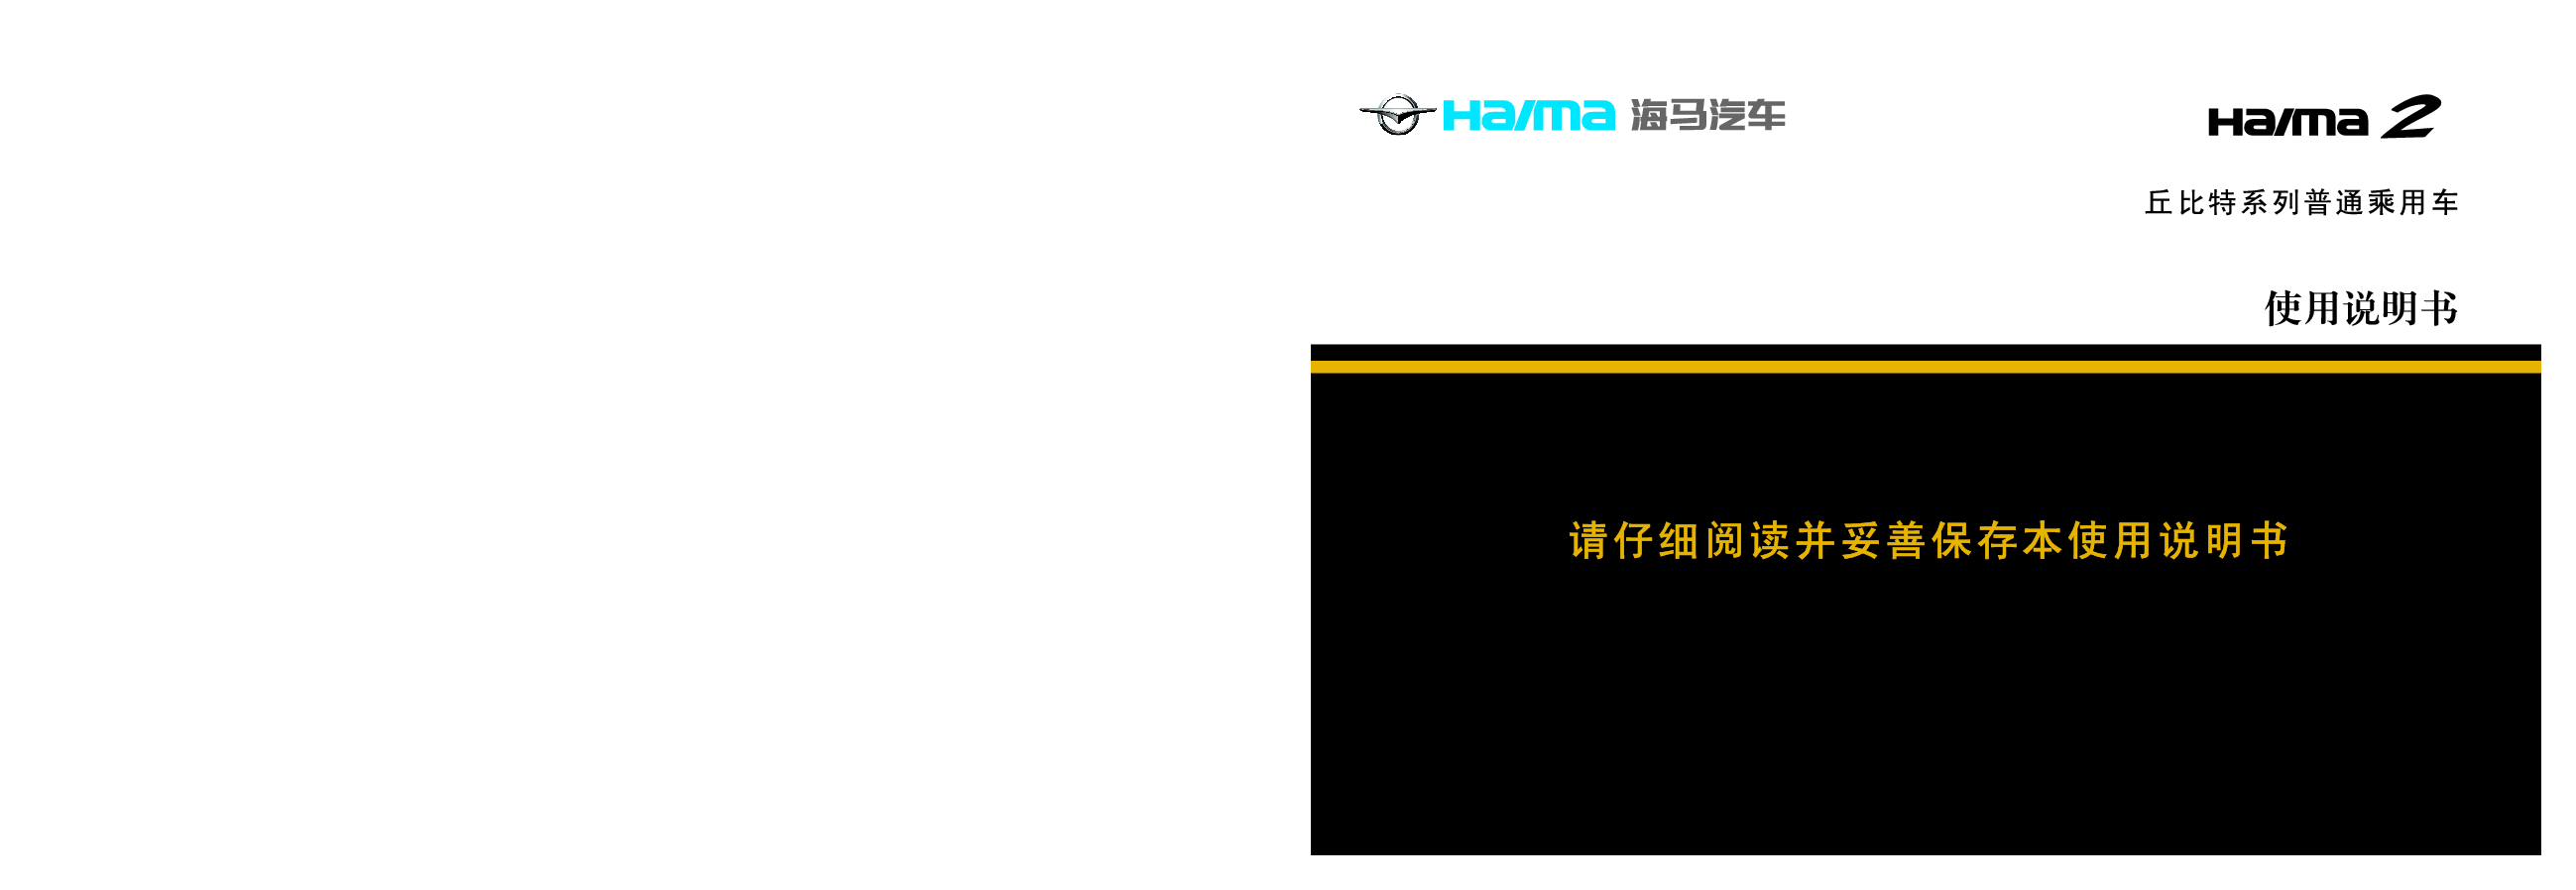 海马 Haima 2 丘比特 2013 使用说明书 封面